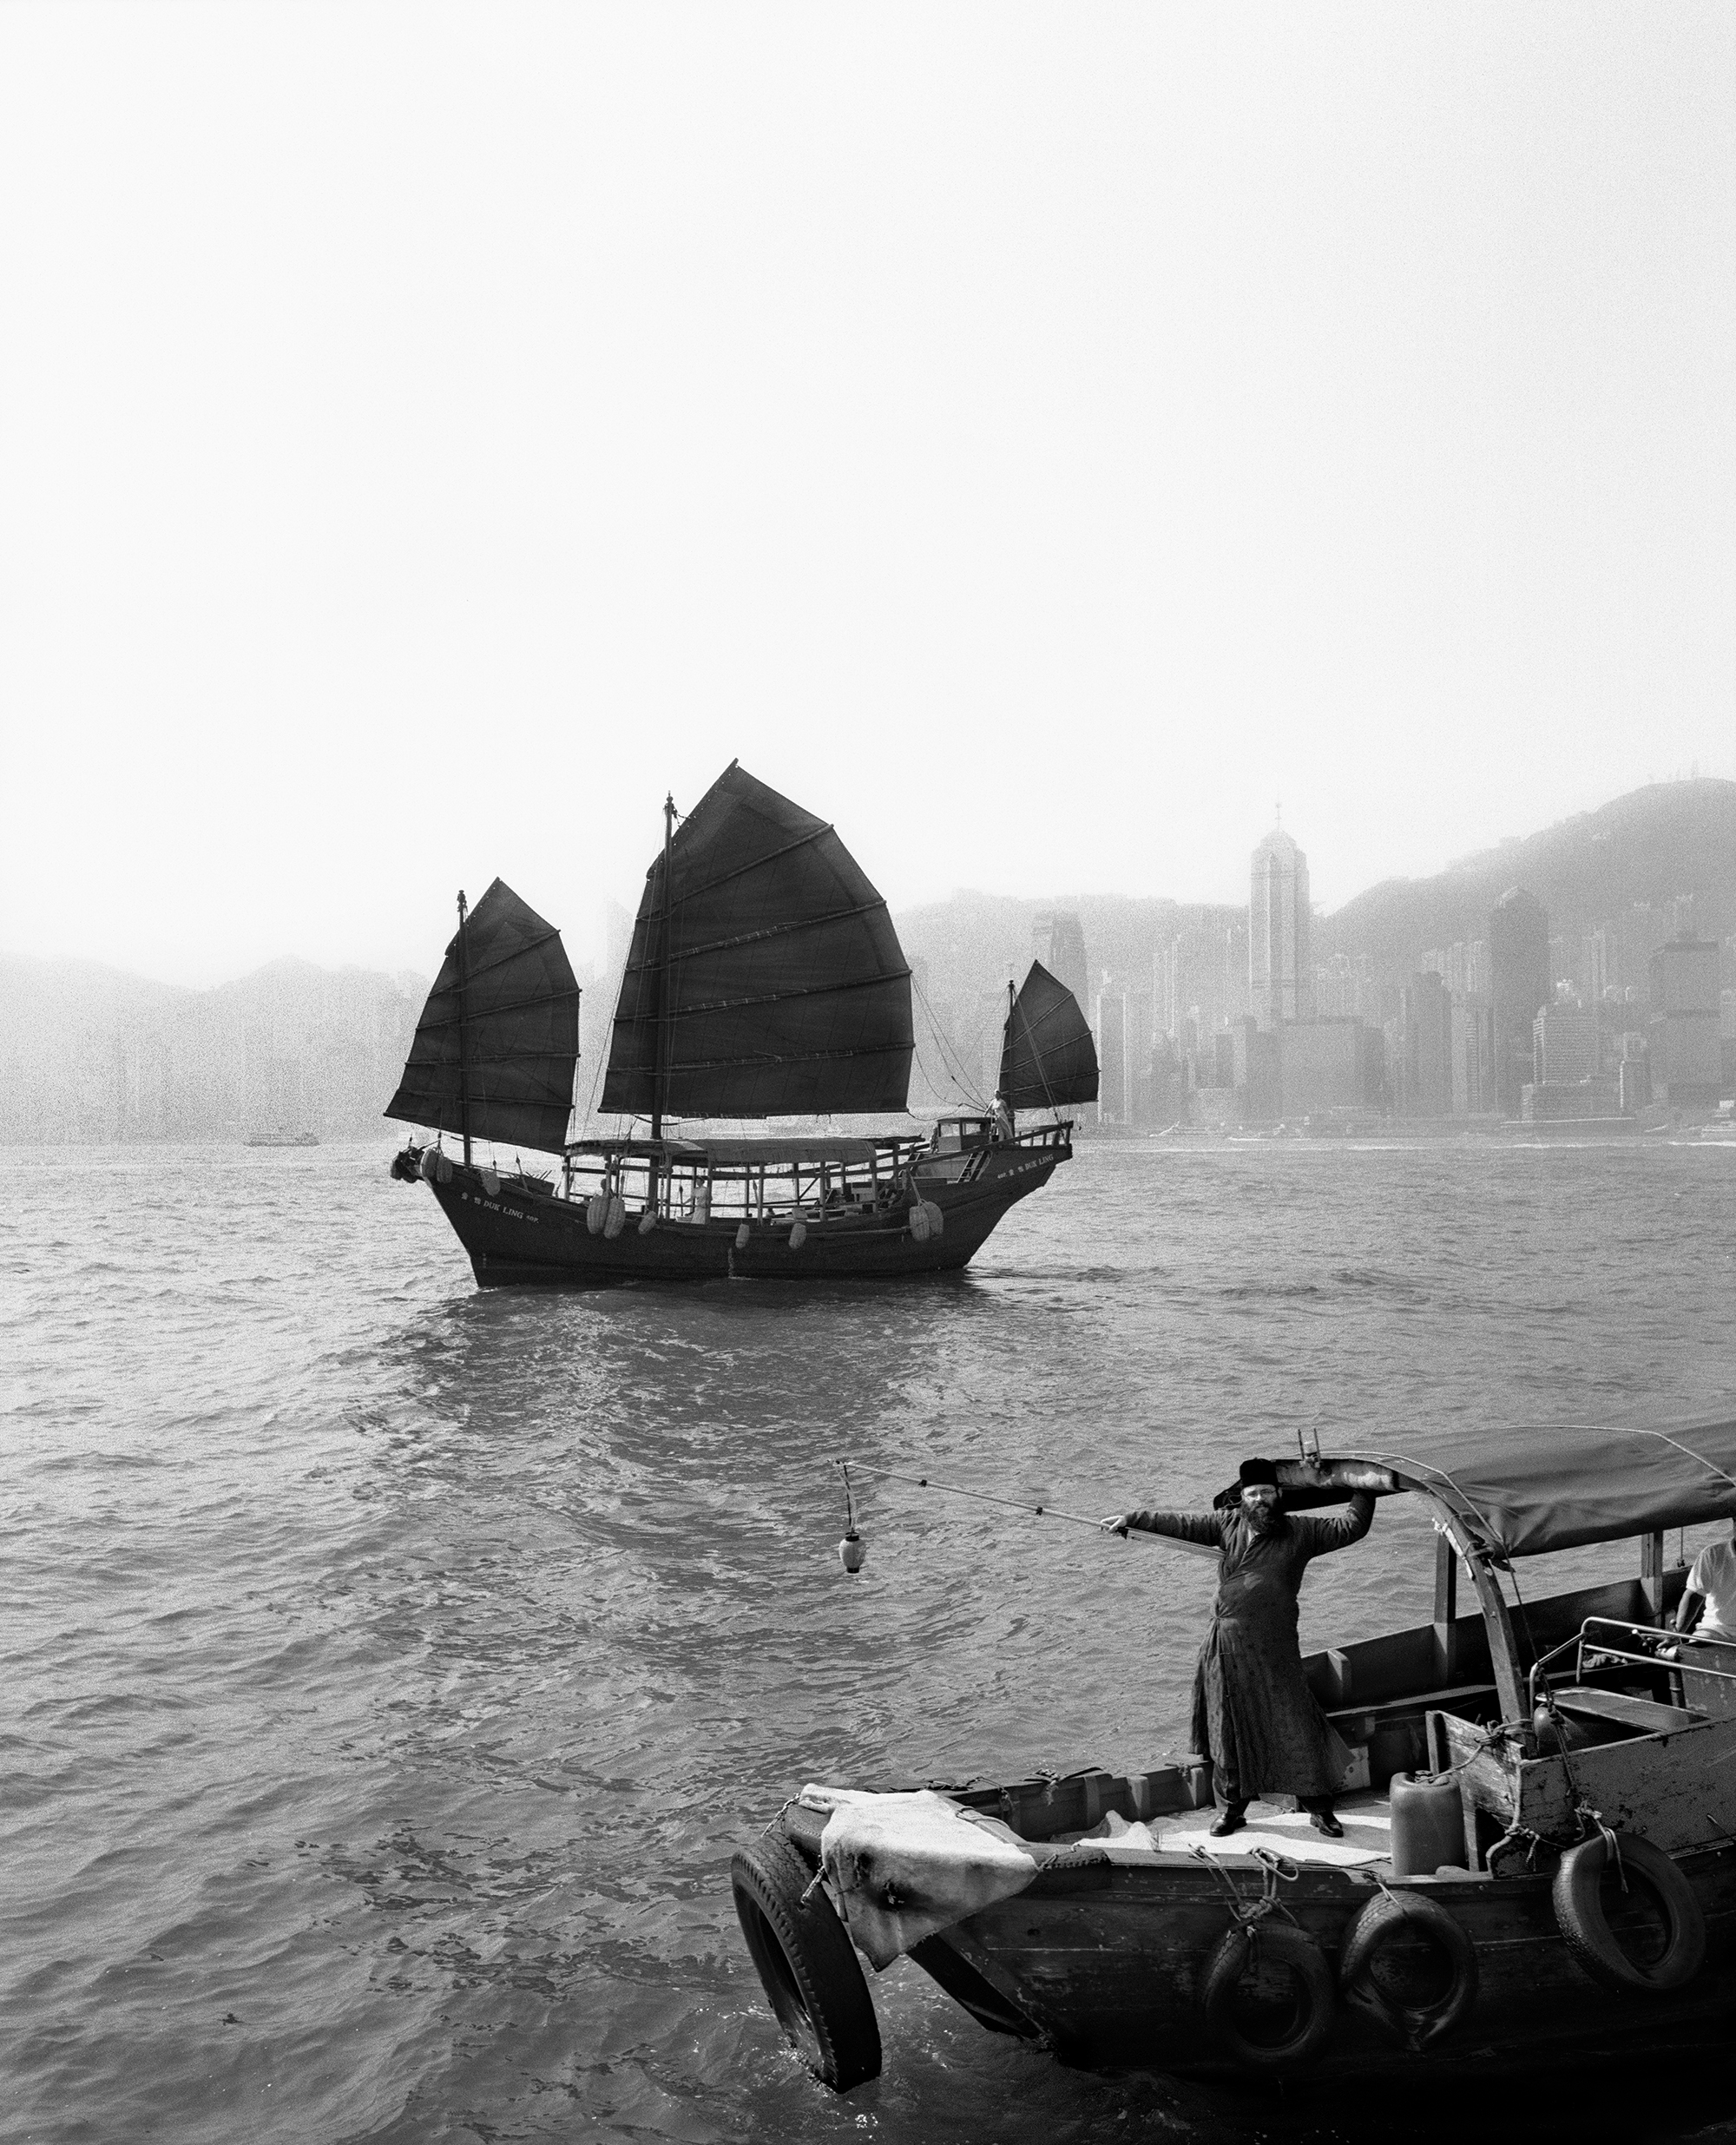  Hong Kong, China, 1998 